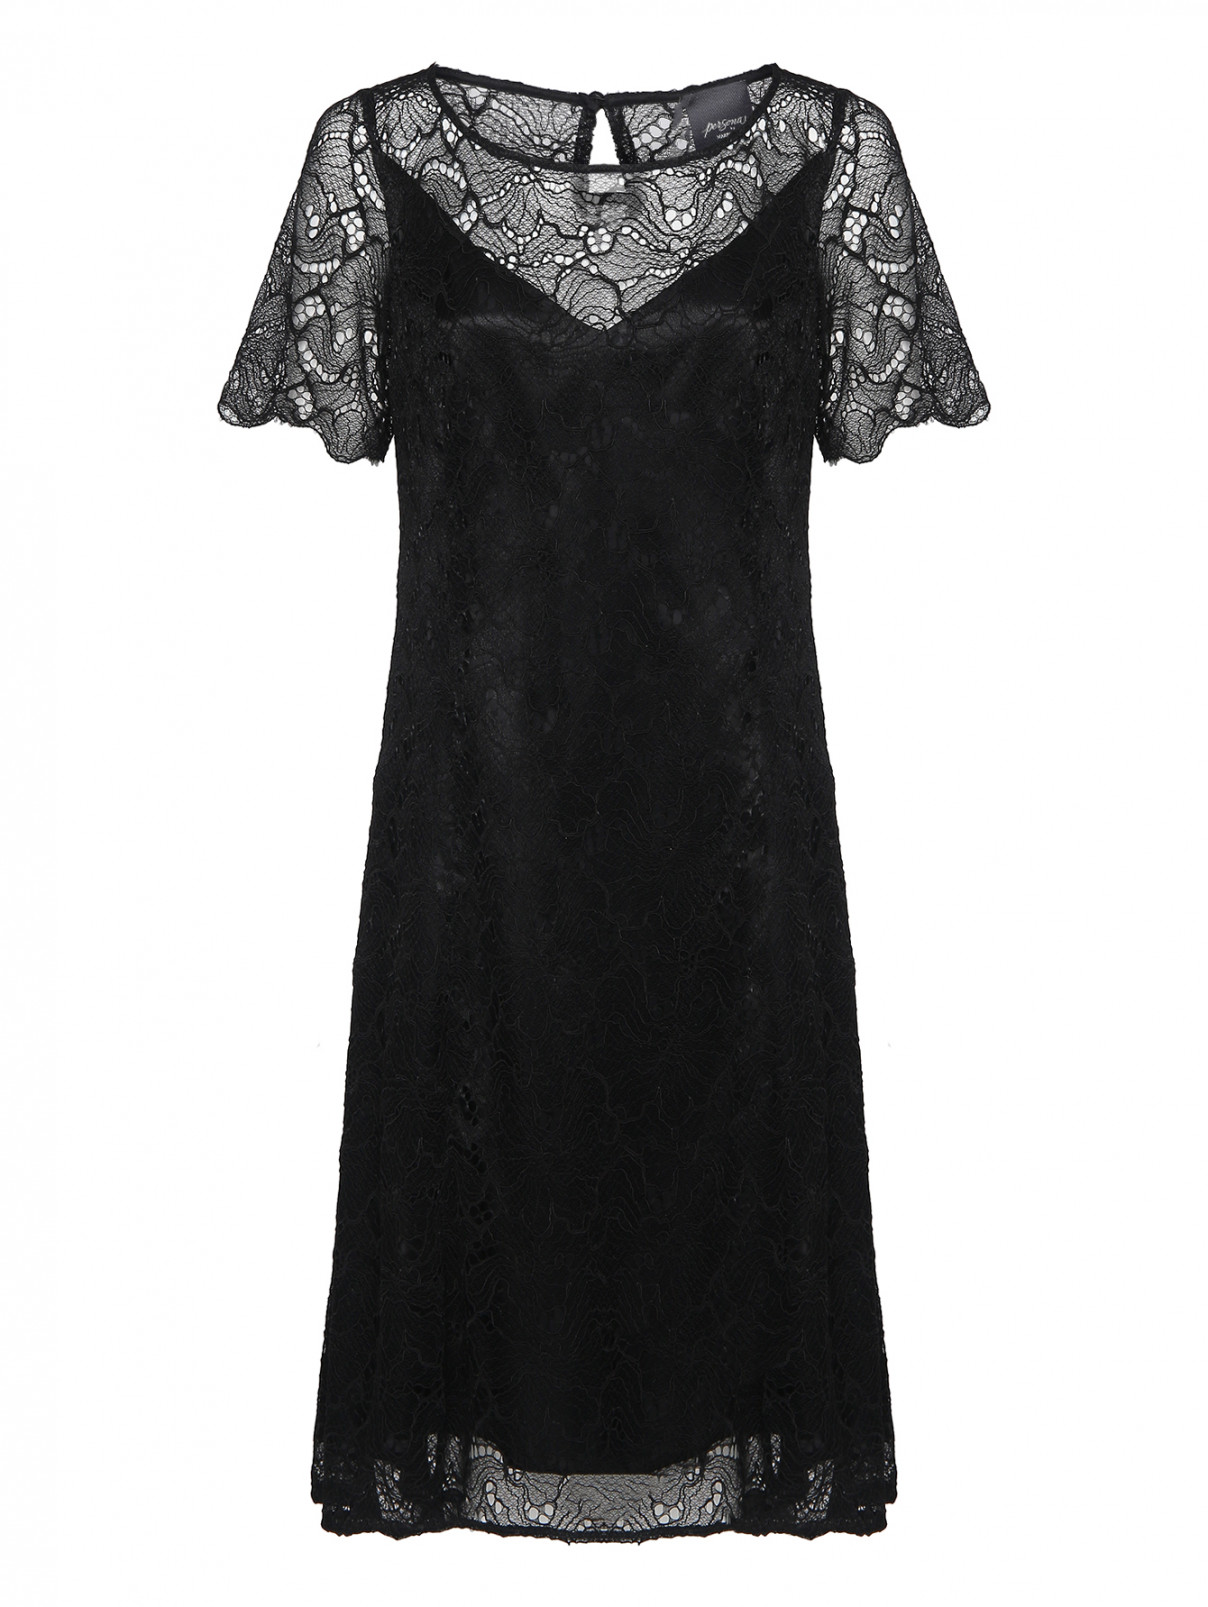 Платье из кружева с коротким рукавом Persona by Marina Rinaldi  –  Общий вид  – Цвет:  Черный